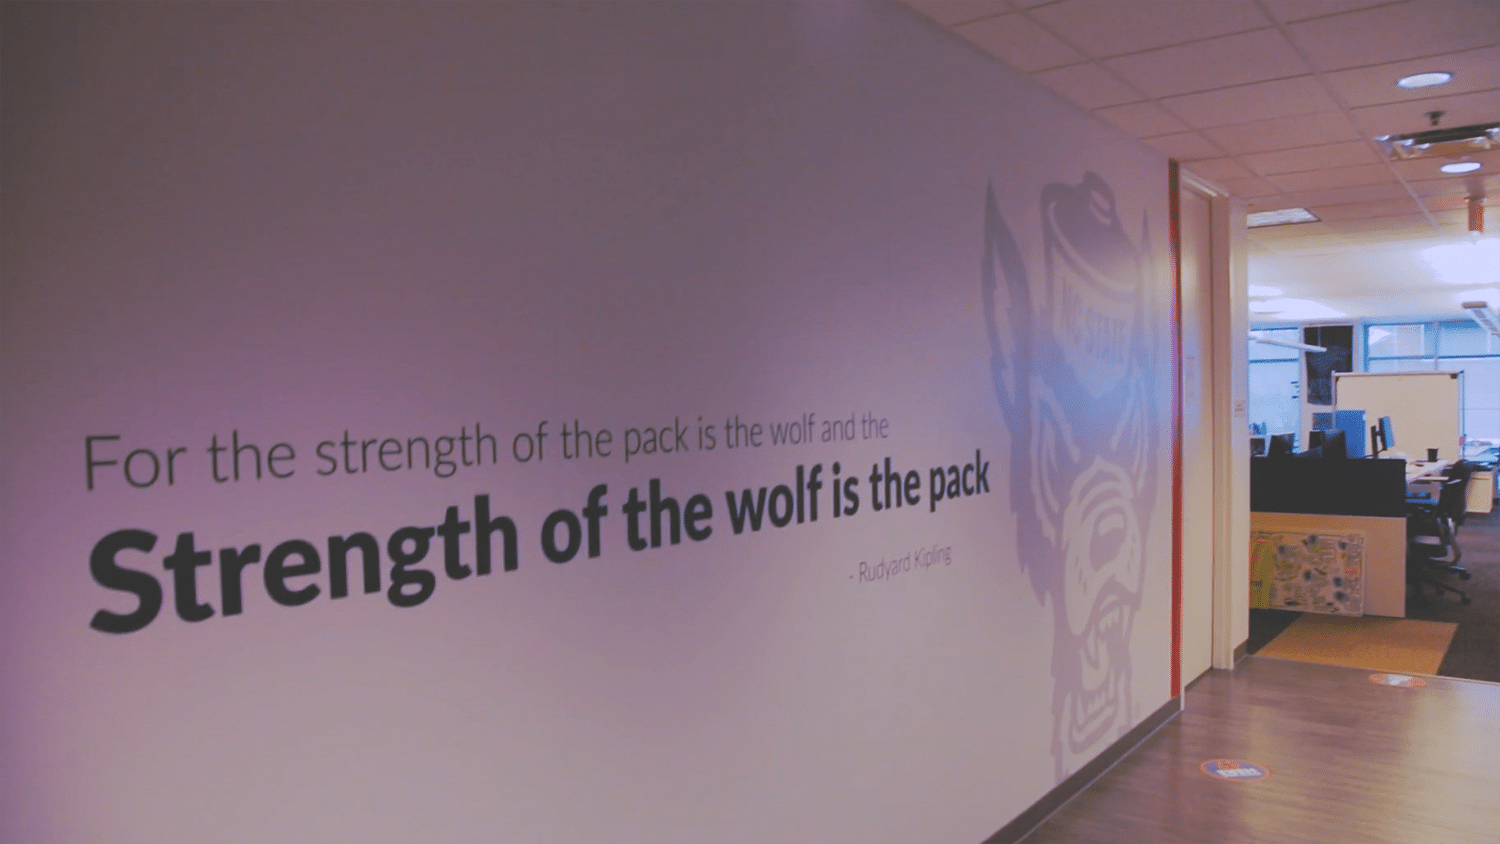 在LexisNexis办公室的走廊上有一幅壁画，上面写着“狼群的力量在于狼，而狼的力量在于狼群。”